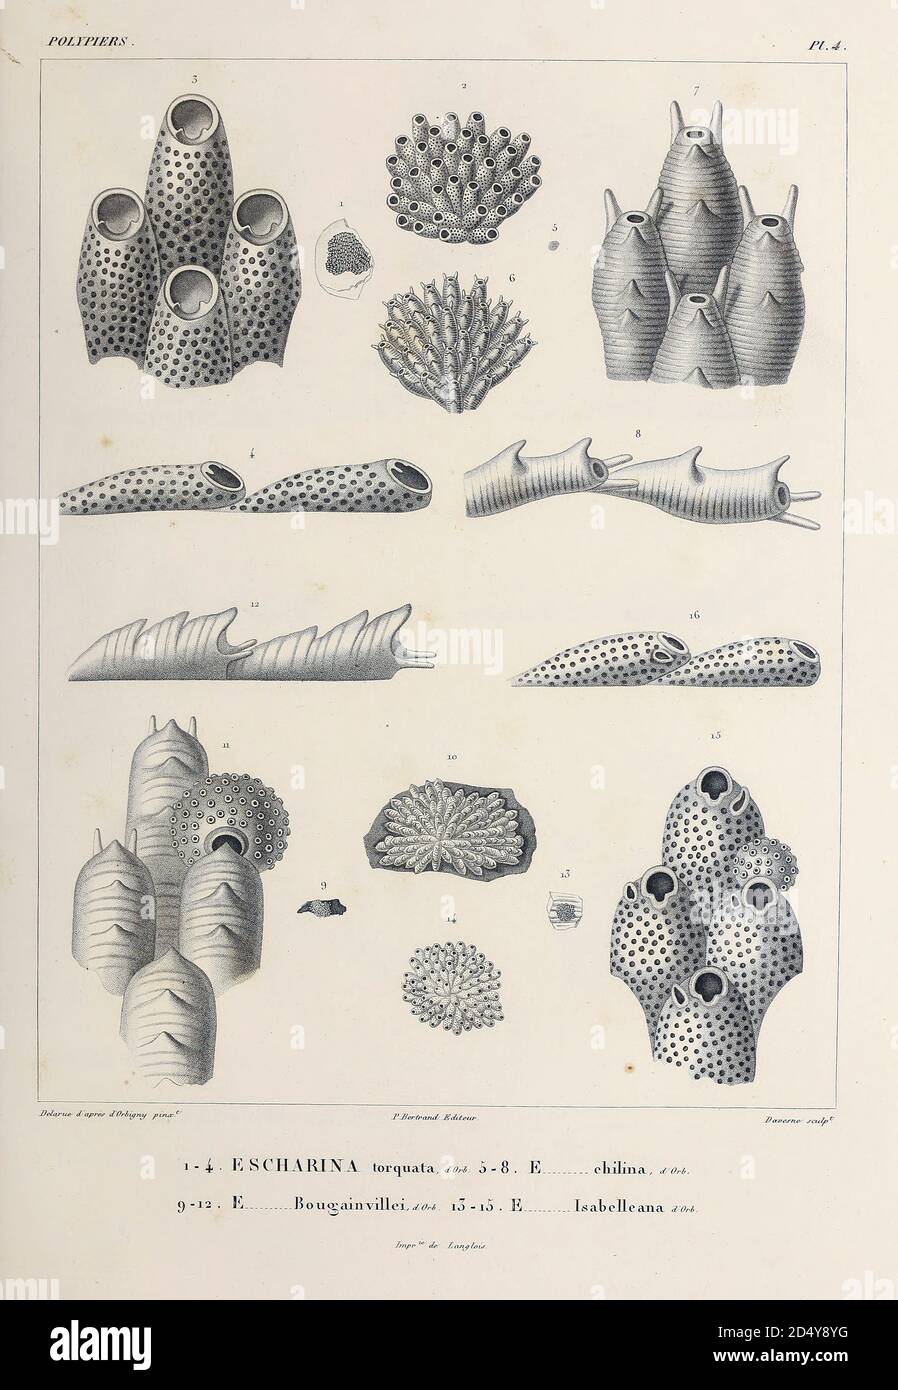 Les Bryozoa (aussi connus sous le nom de Polyzoa, Ectoprocta ou communément sous le nom d'animaux de mousse) sont un phylum d'invertébrés aquatiques. Généralement d'environ 0.5 millimètres de long, ce sont des dispositifs d'alimentation qui filtrent les particules de nourriture hors de l'eau à l'aide d'un lophophore rétractable, une « couronne » de tentacules bordée de cilia. La plupart des espèces marines vivent dans les eaux tropicales, croquis du livre 'Voyage dans l'Amérique Méridionale' [Voyage en Amérique du Sud: (Brésil, République orientale de l'Uruguay, République Argentine, Patagonie, république du Chili, république de Bolivie, république du Pérou), exécuté pendant l'année Banque D'Images